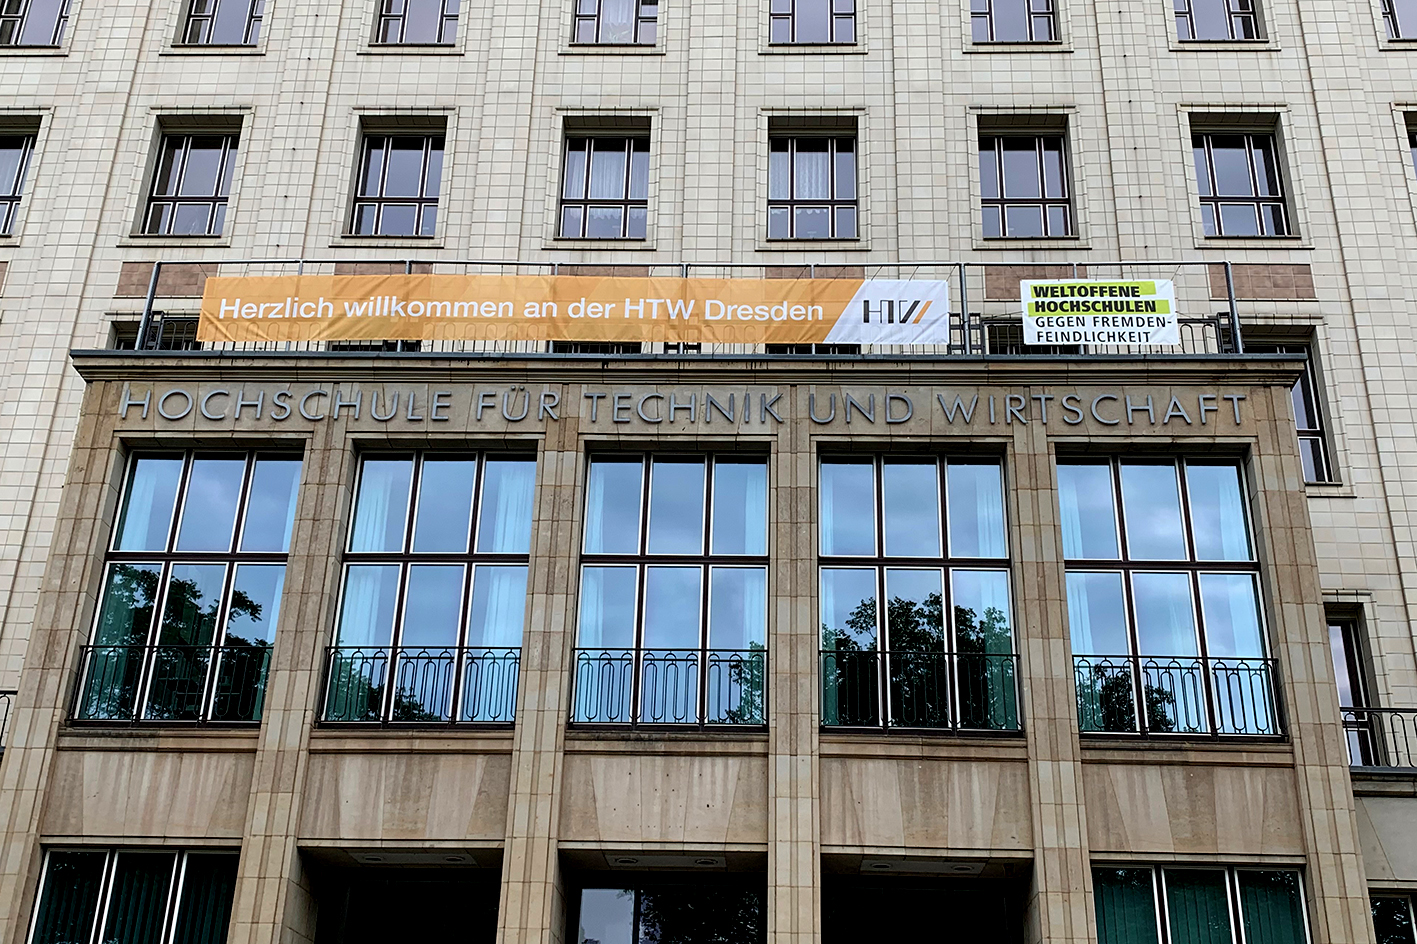 Fassade HTW Dresden mit Banner "Weltoffene Hochschule"